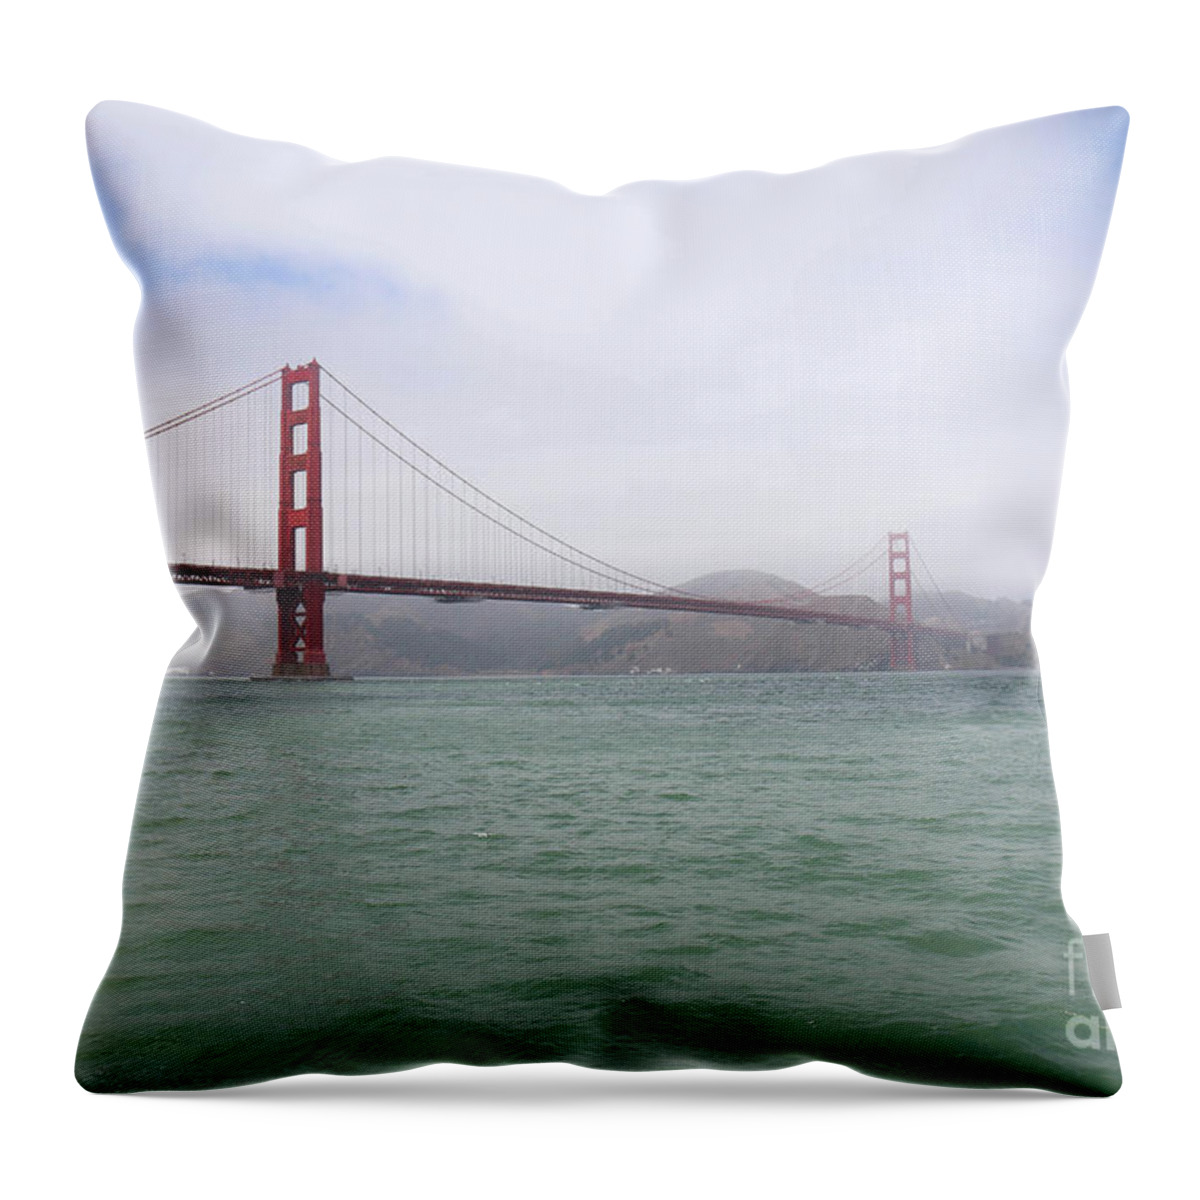 Golden Gate Bridge Throw Pillow featuring the photograph Golden Gate Bridge III by Veronica Batterson